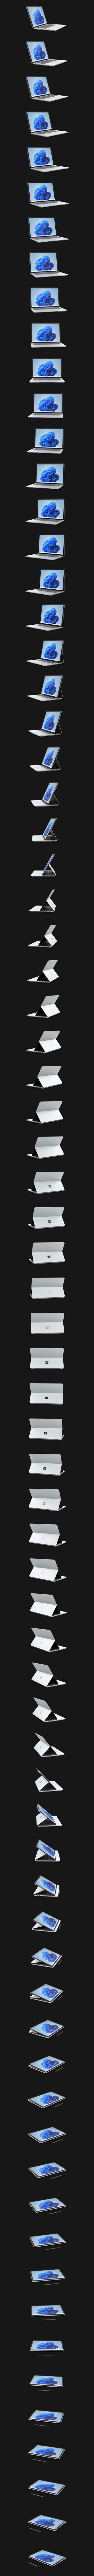 Surface Laptop Studio som roterar 360 grader.